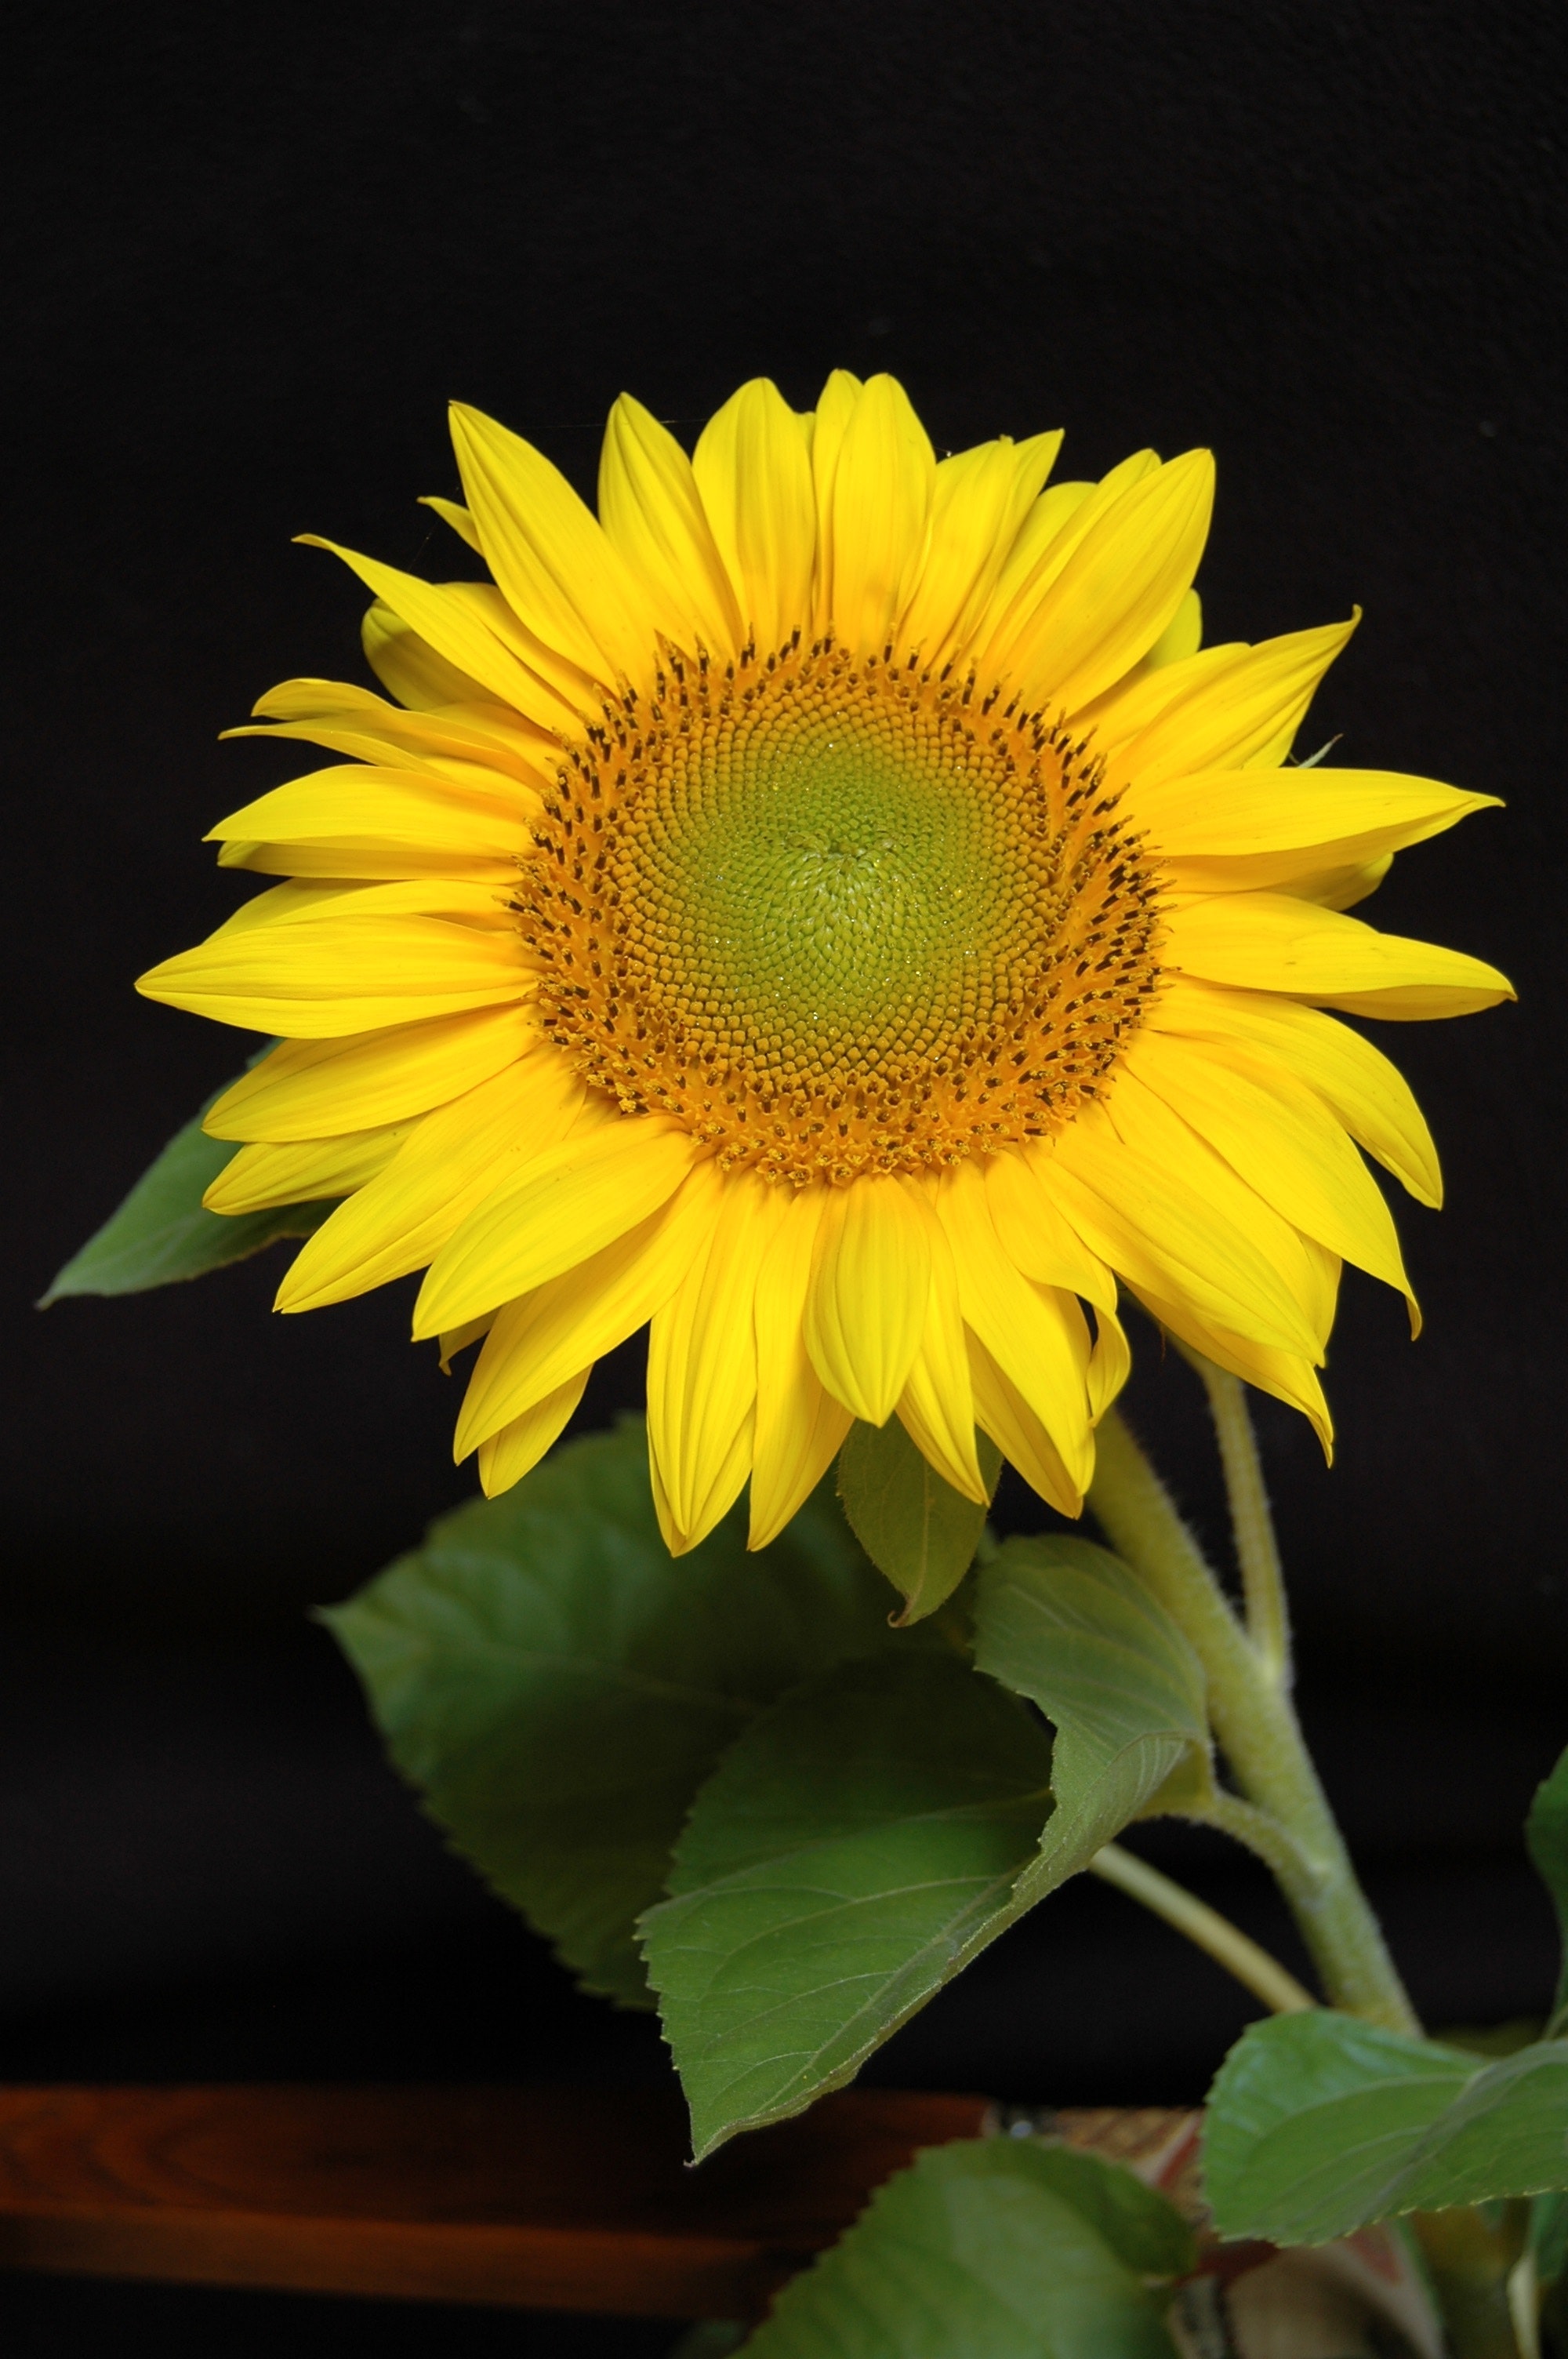 Yellow flower plant in macro shot photo